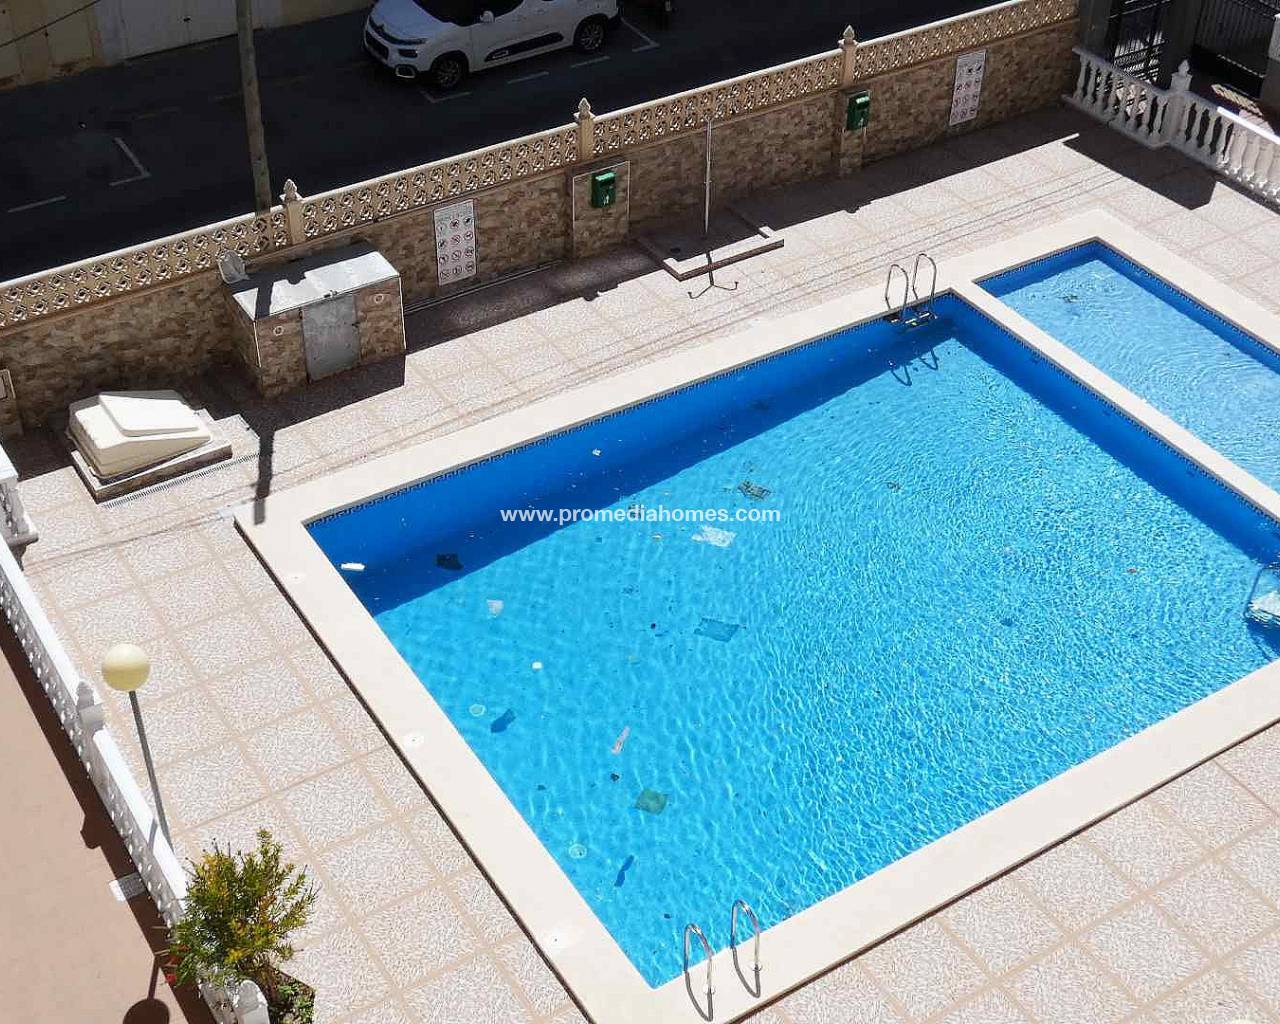 Resale leilighet til salgs i Torrevieja med basseng